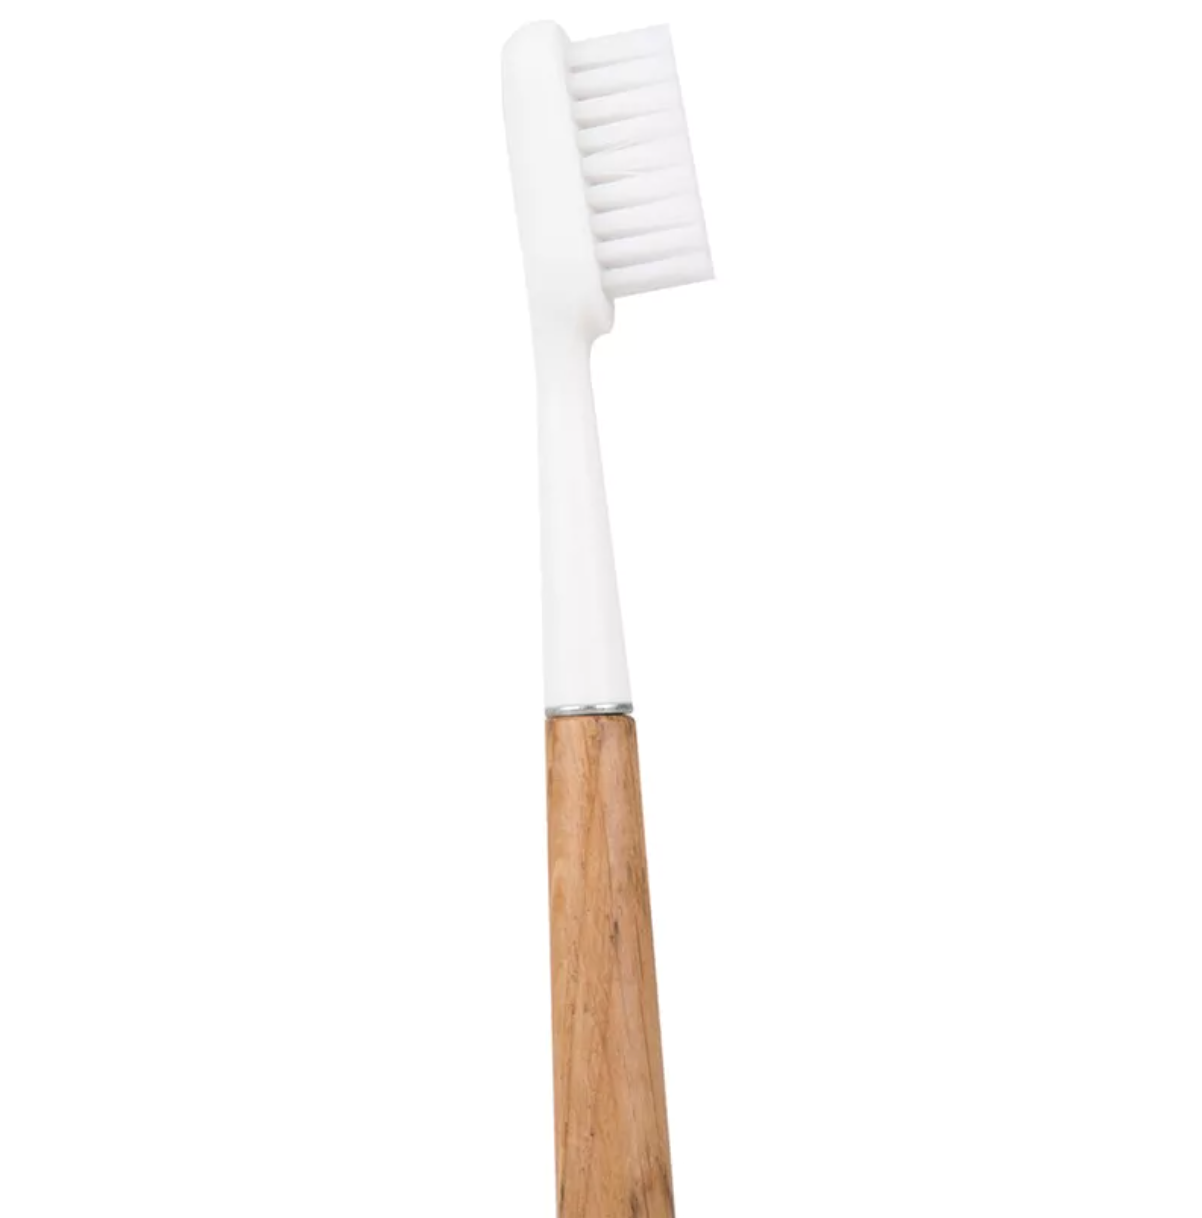 Raspall de dents recarregable de fusta